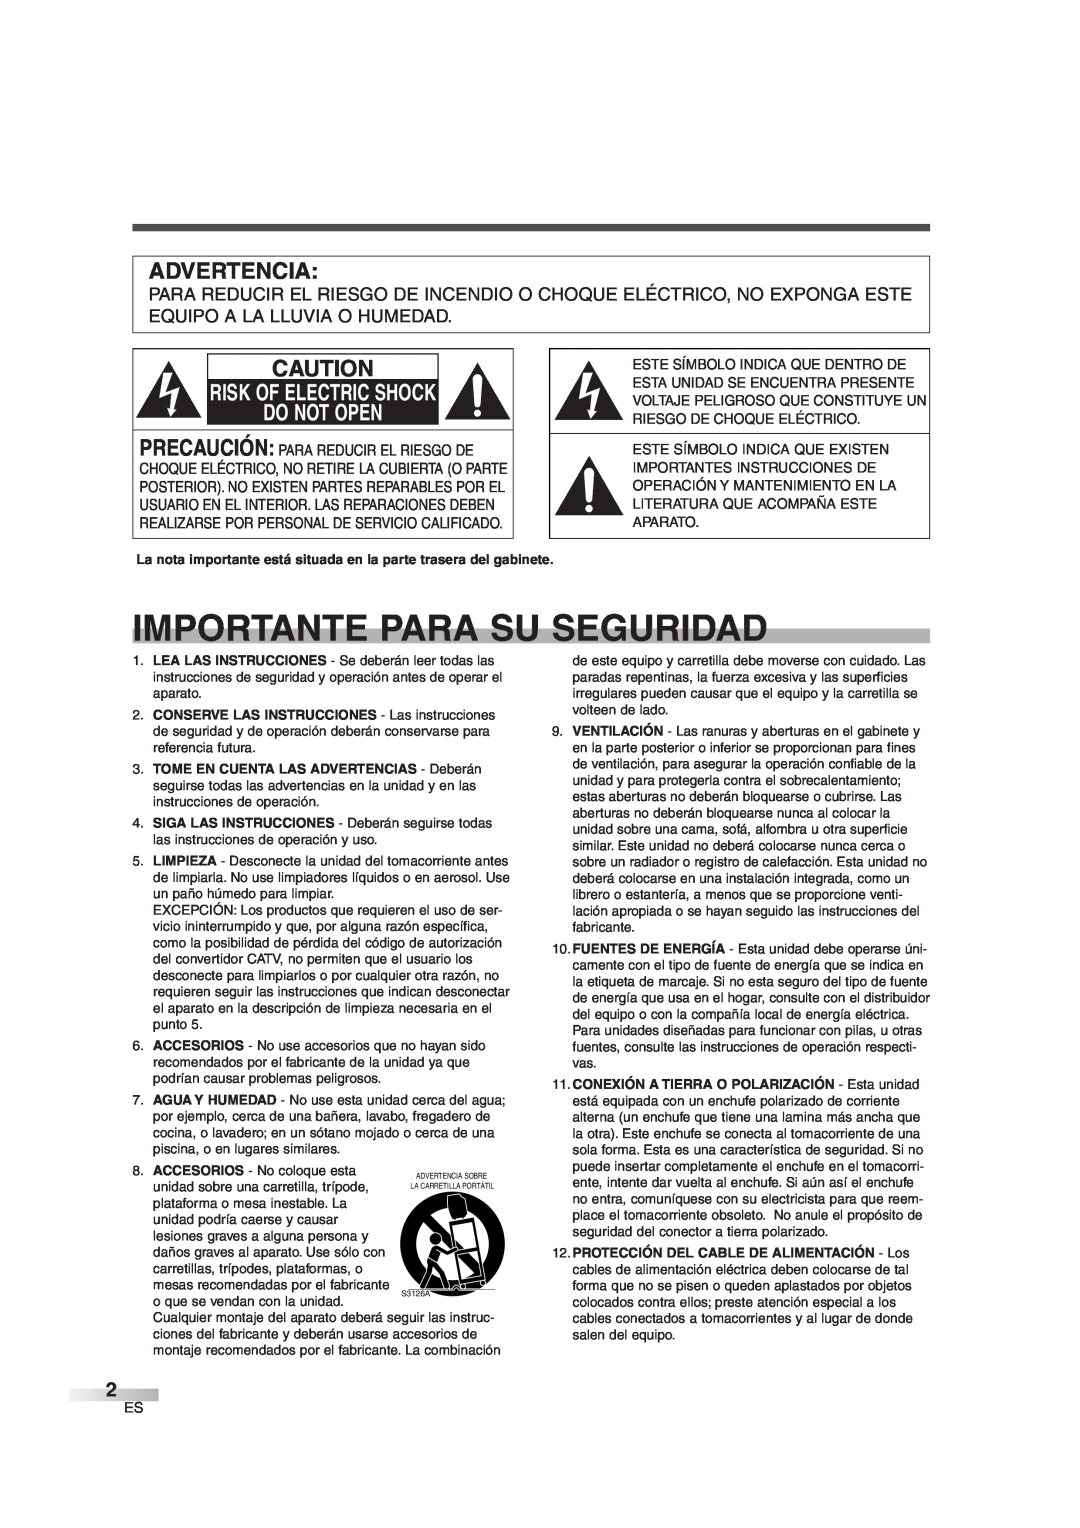 Sylvania SSGF4276 owner manual Importante Para Su Seguridad, Advertencia, Risk Of Electric Shock Do Not Open 